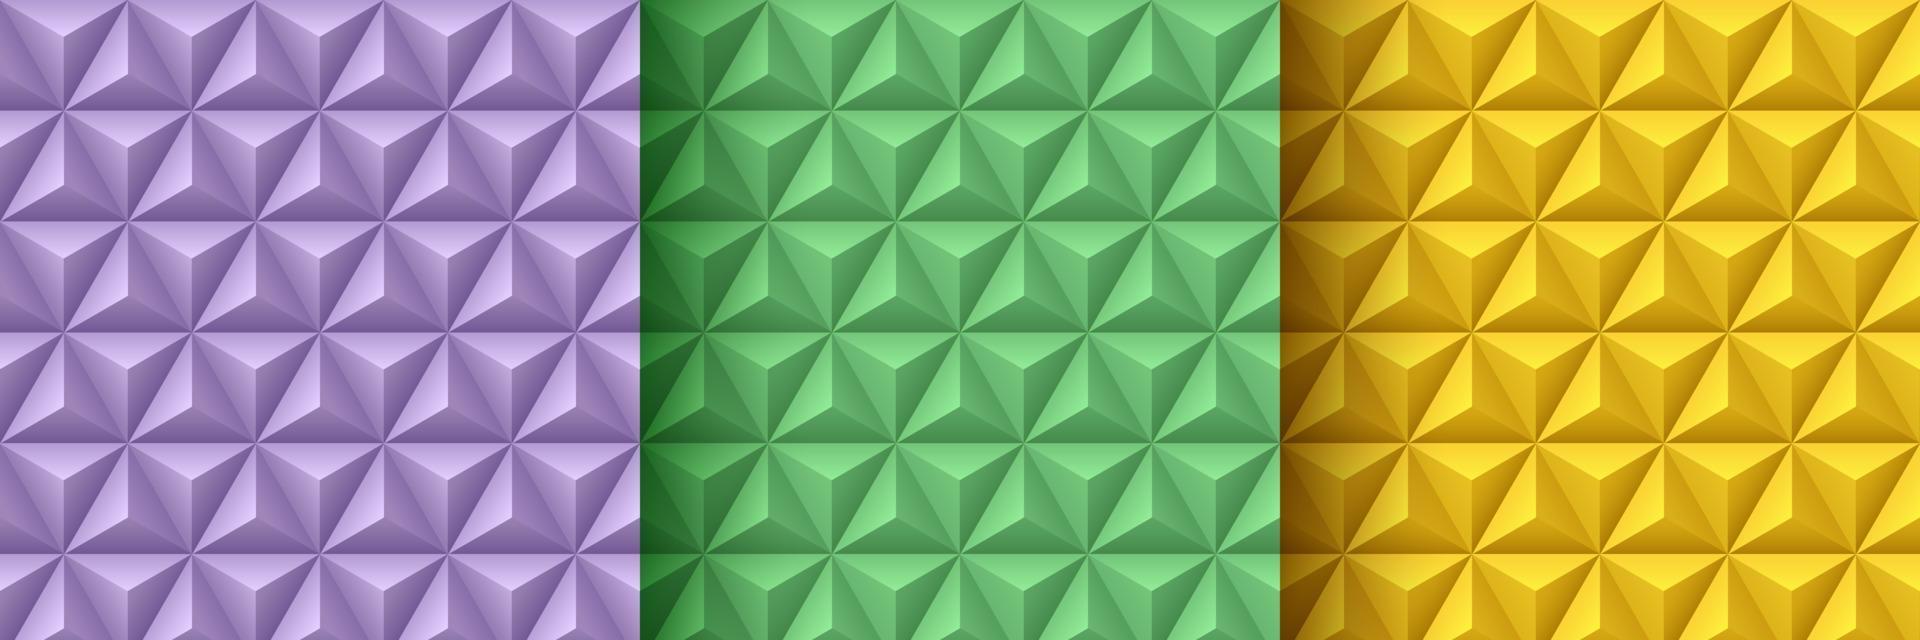 set lavendel paars, groen en geel geometrische 3d patroon achtergrond. abstracte driehoek textuur collectie pastel kleur ontwerp. minimaal en eenvoudig bannerontwerp. vector illustratie